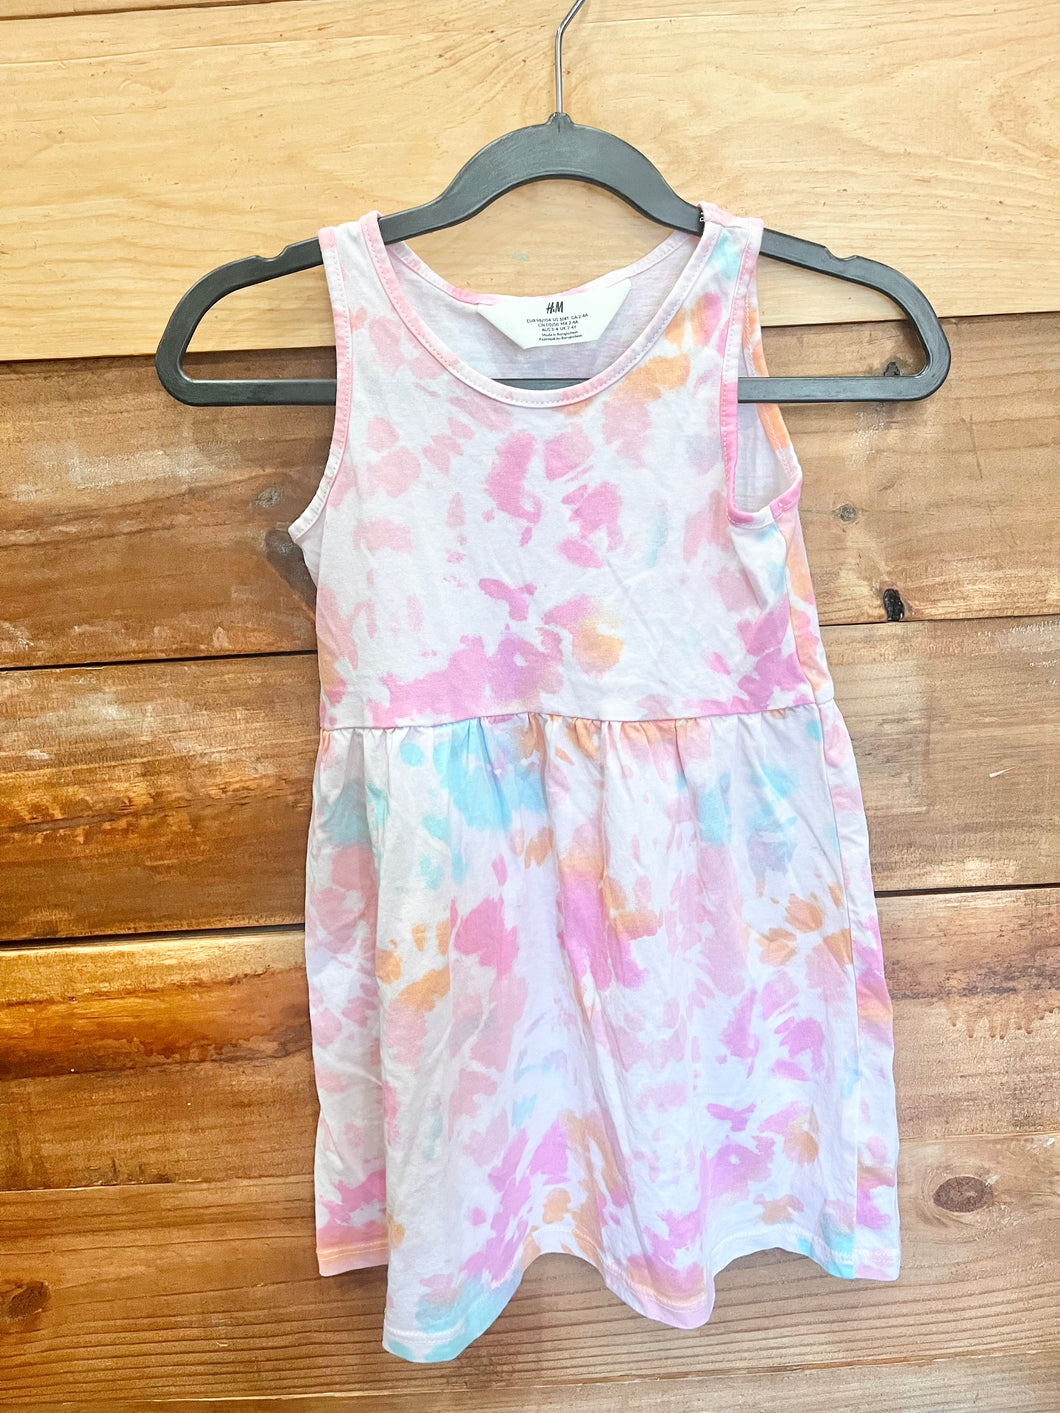 H&M Pink Dye Dress Size 3-4T